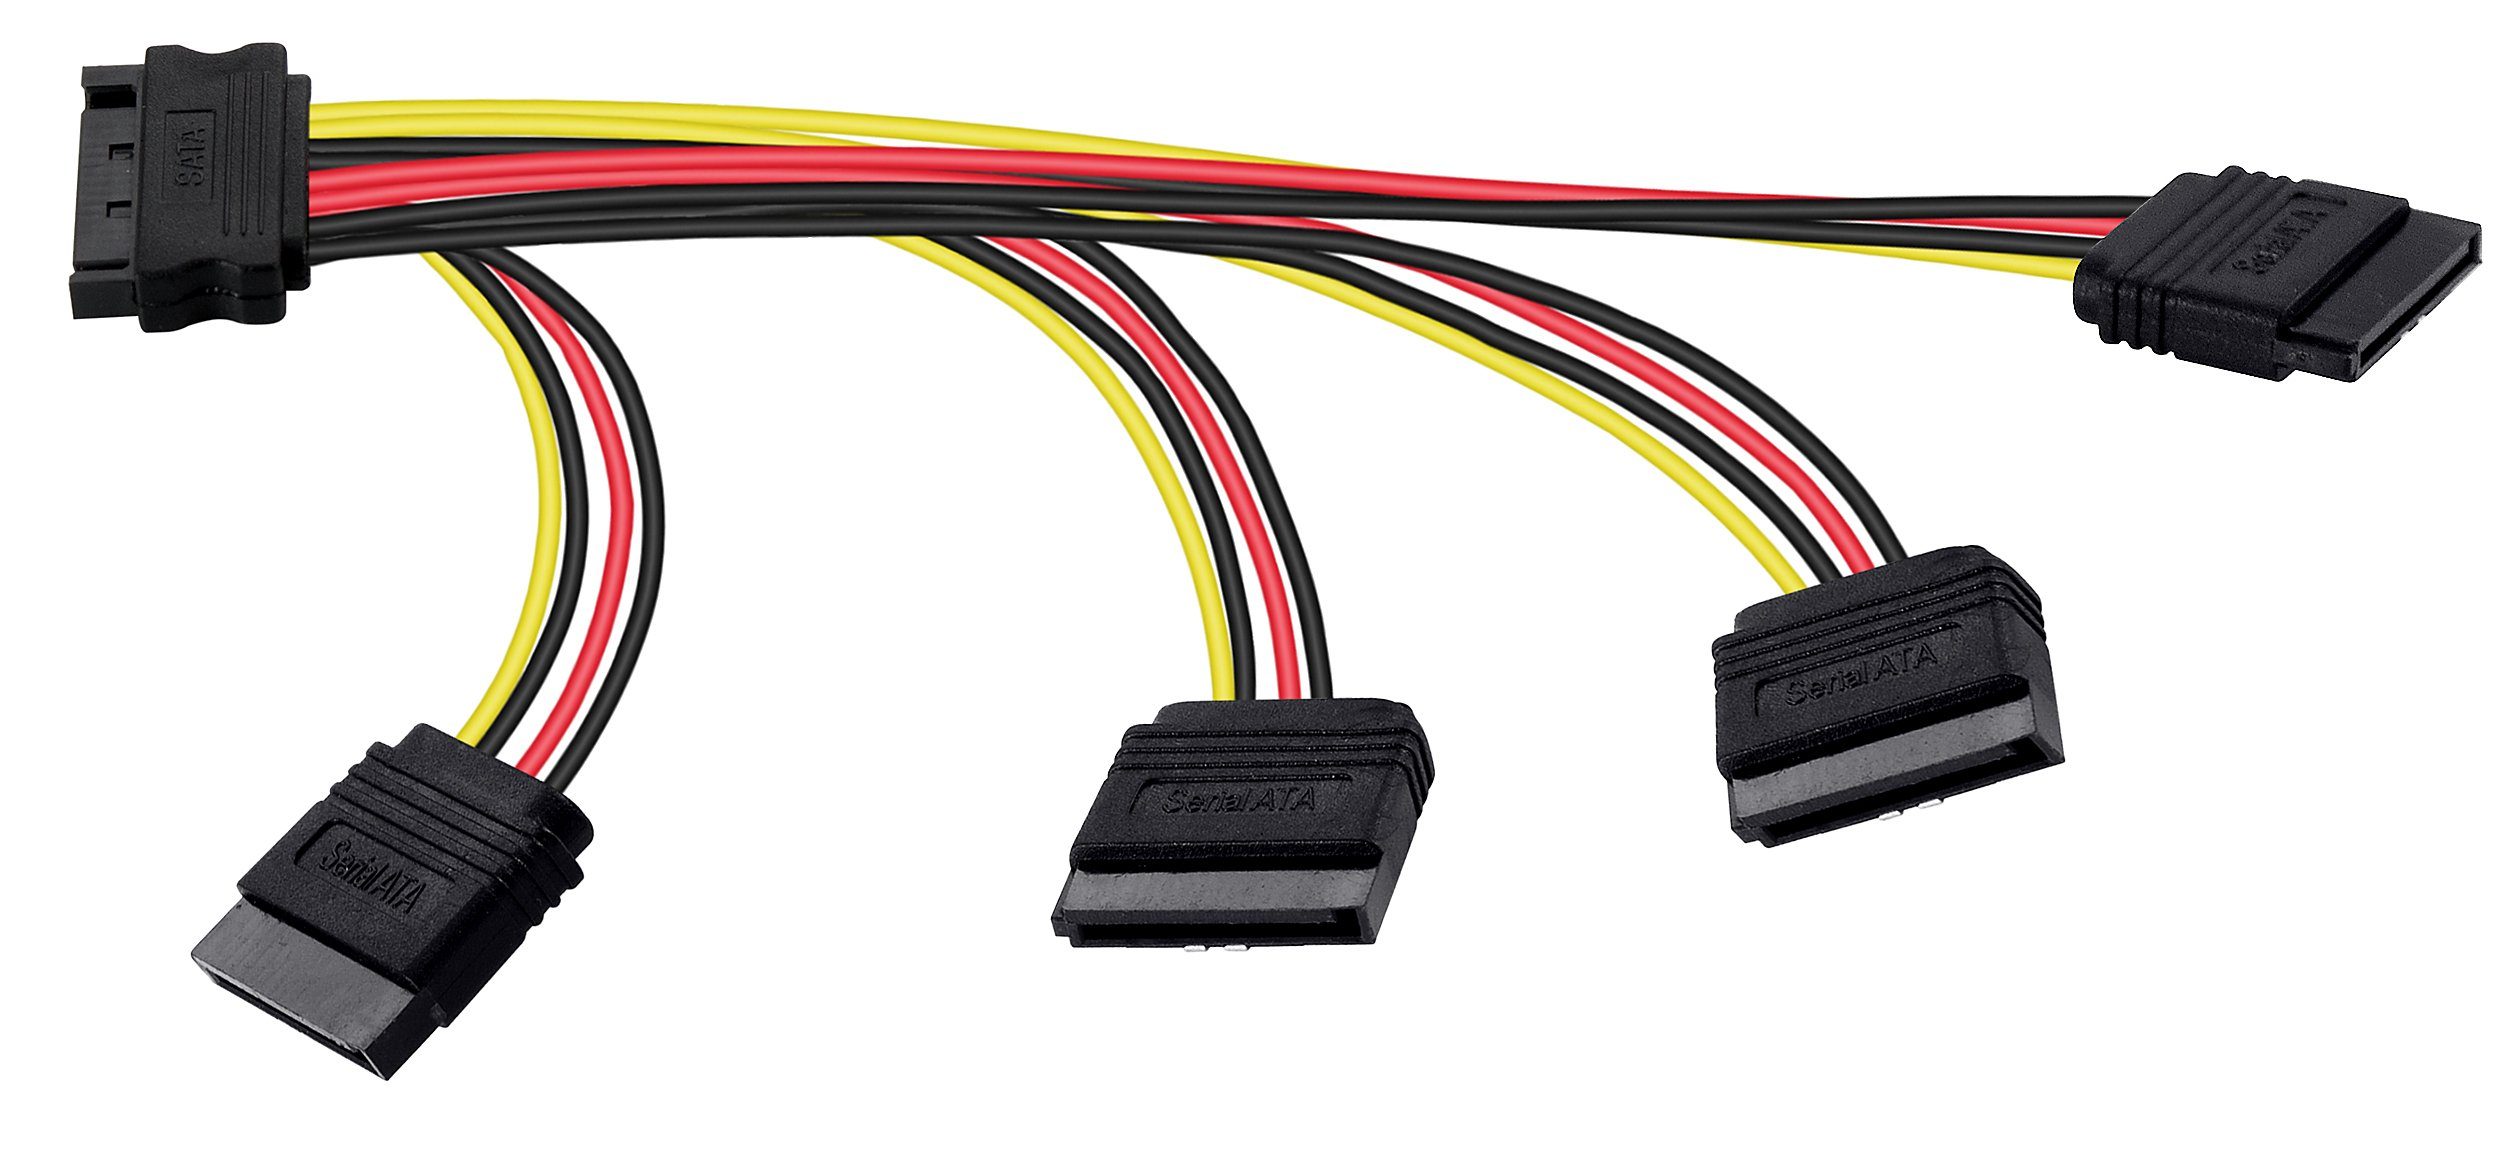 Poppstar SATA Stromkabel Verteiler 4-fach für HDD, SSD, Festplatte, Motherboard Stromkabel, Adapter Sata Kabel 14/18/22/25cm 1x Stecker (m) auf 4x Buchse (w) Splitter gerade/gerade (4-18-22-26,5cm)